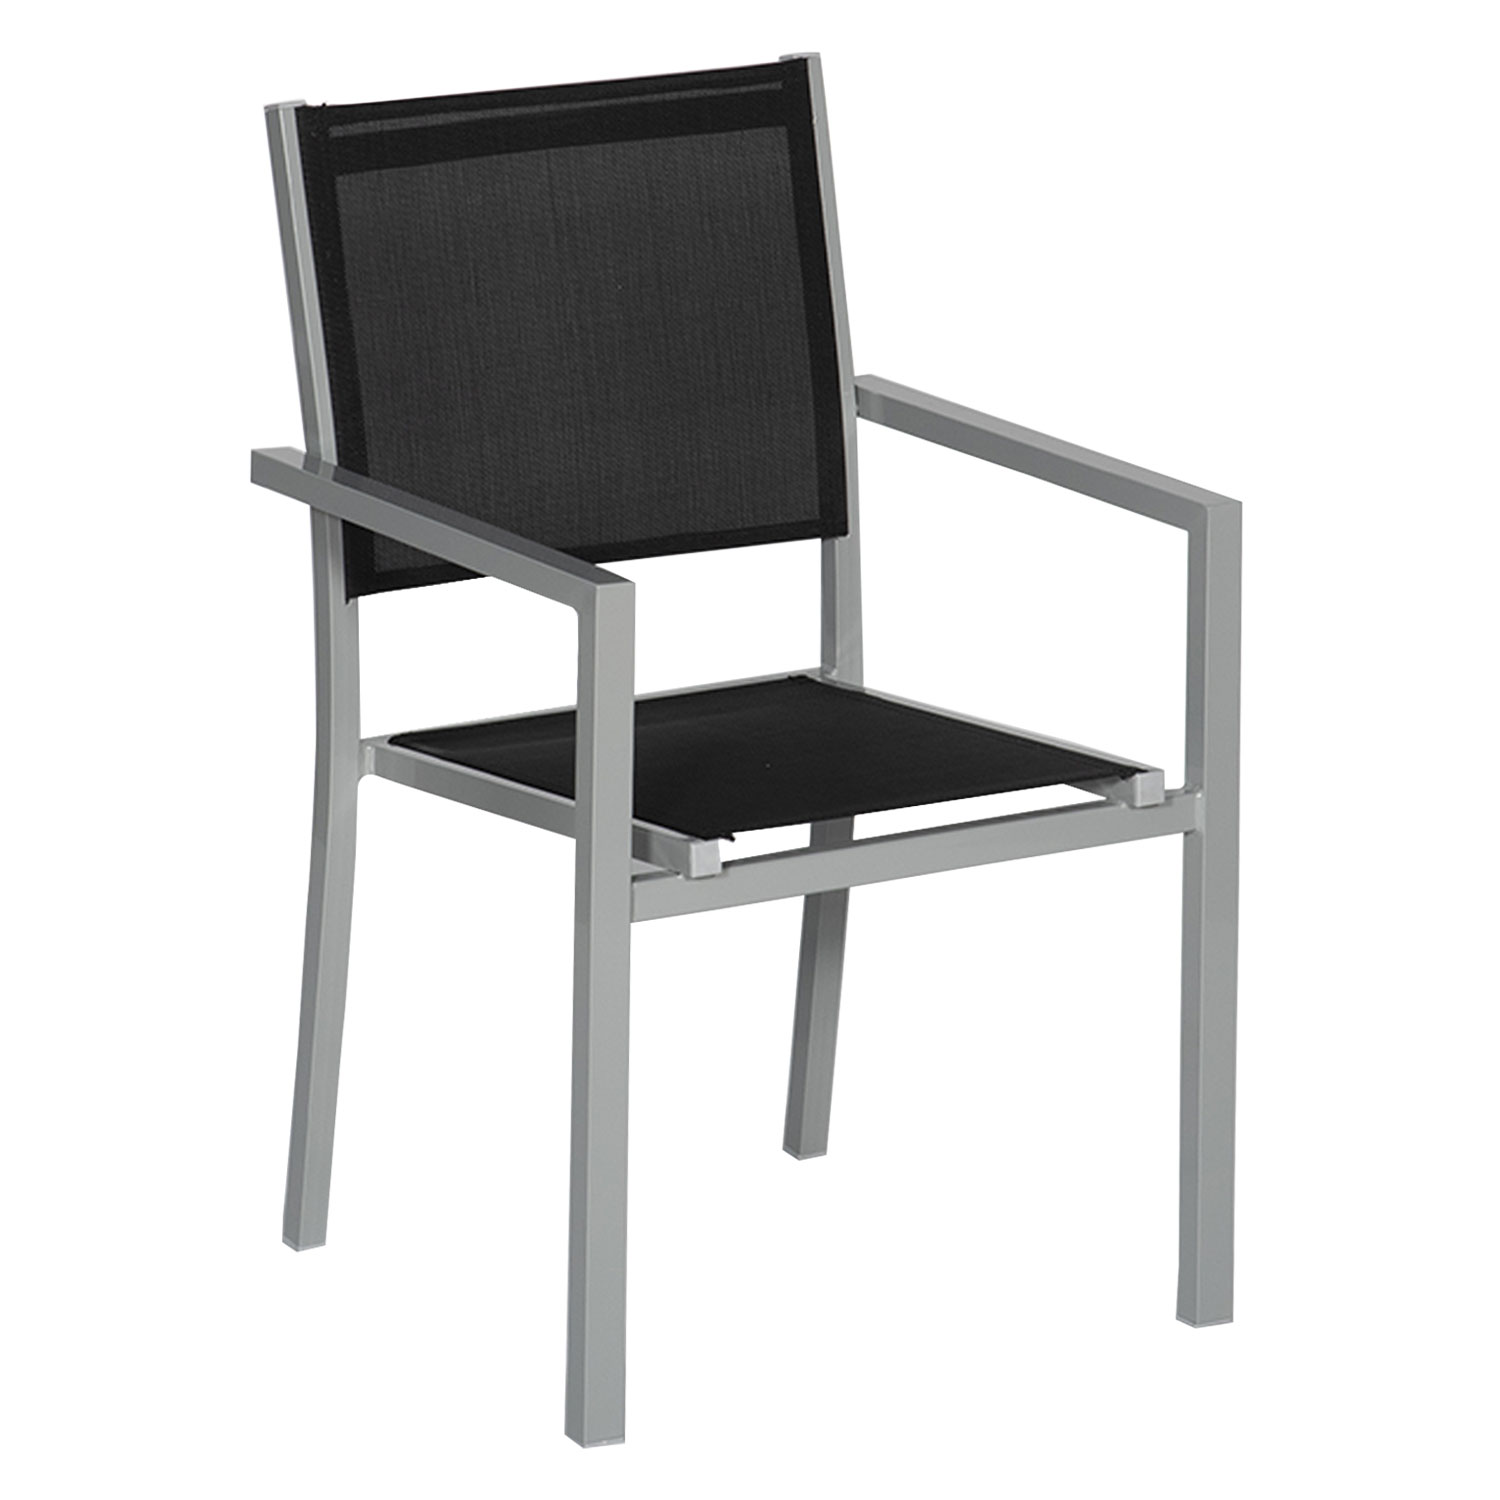 Satz von 6 Stühlen aus grauem Aluminium - schwarzes Textilene